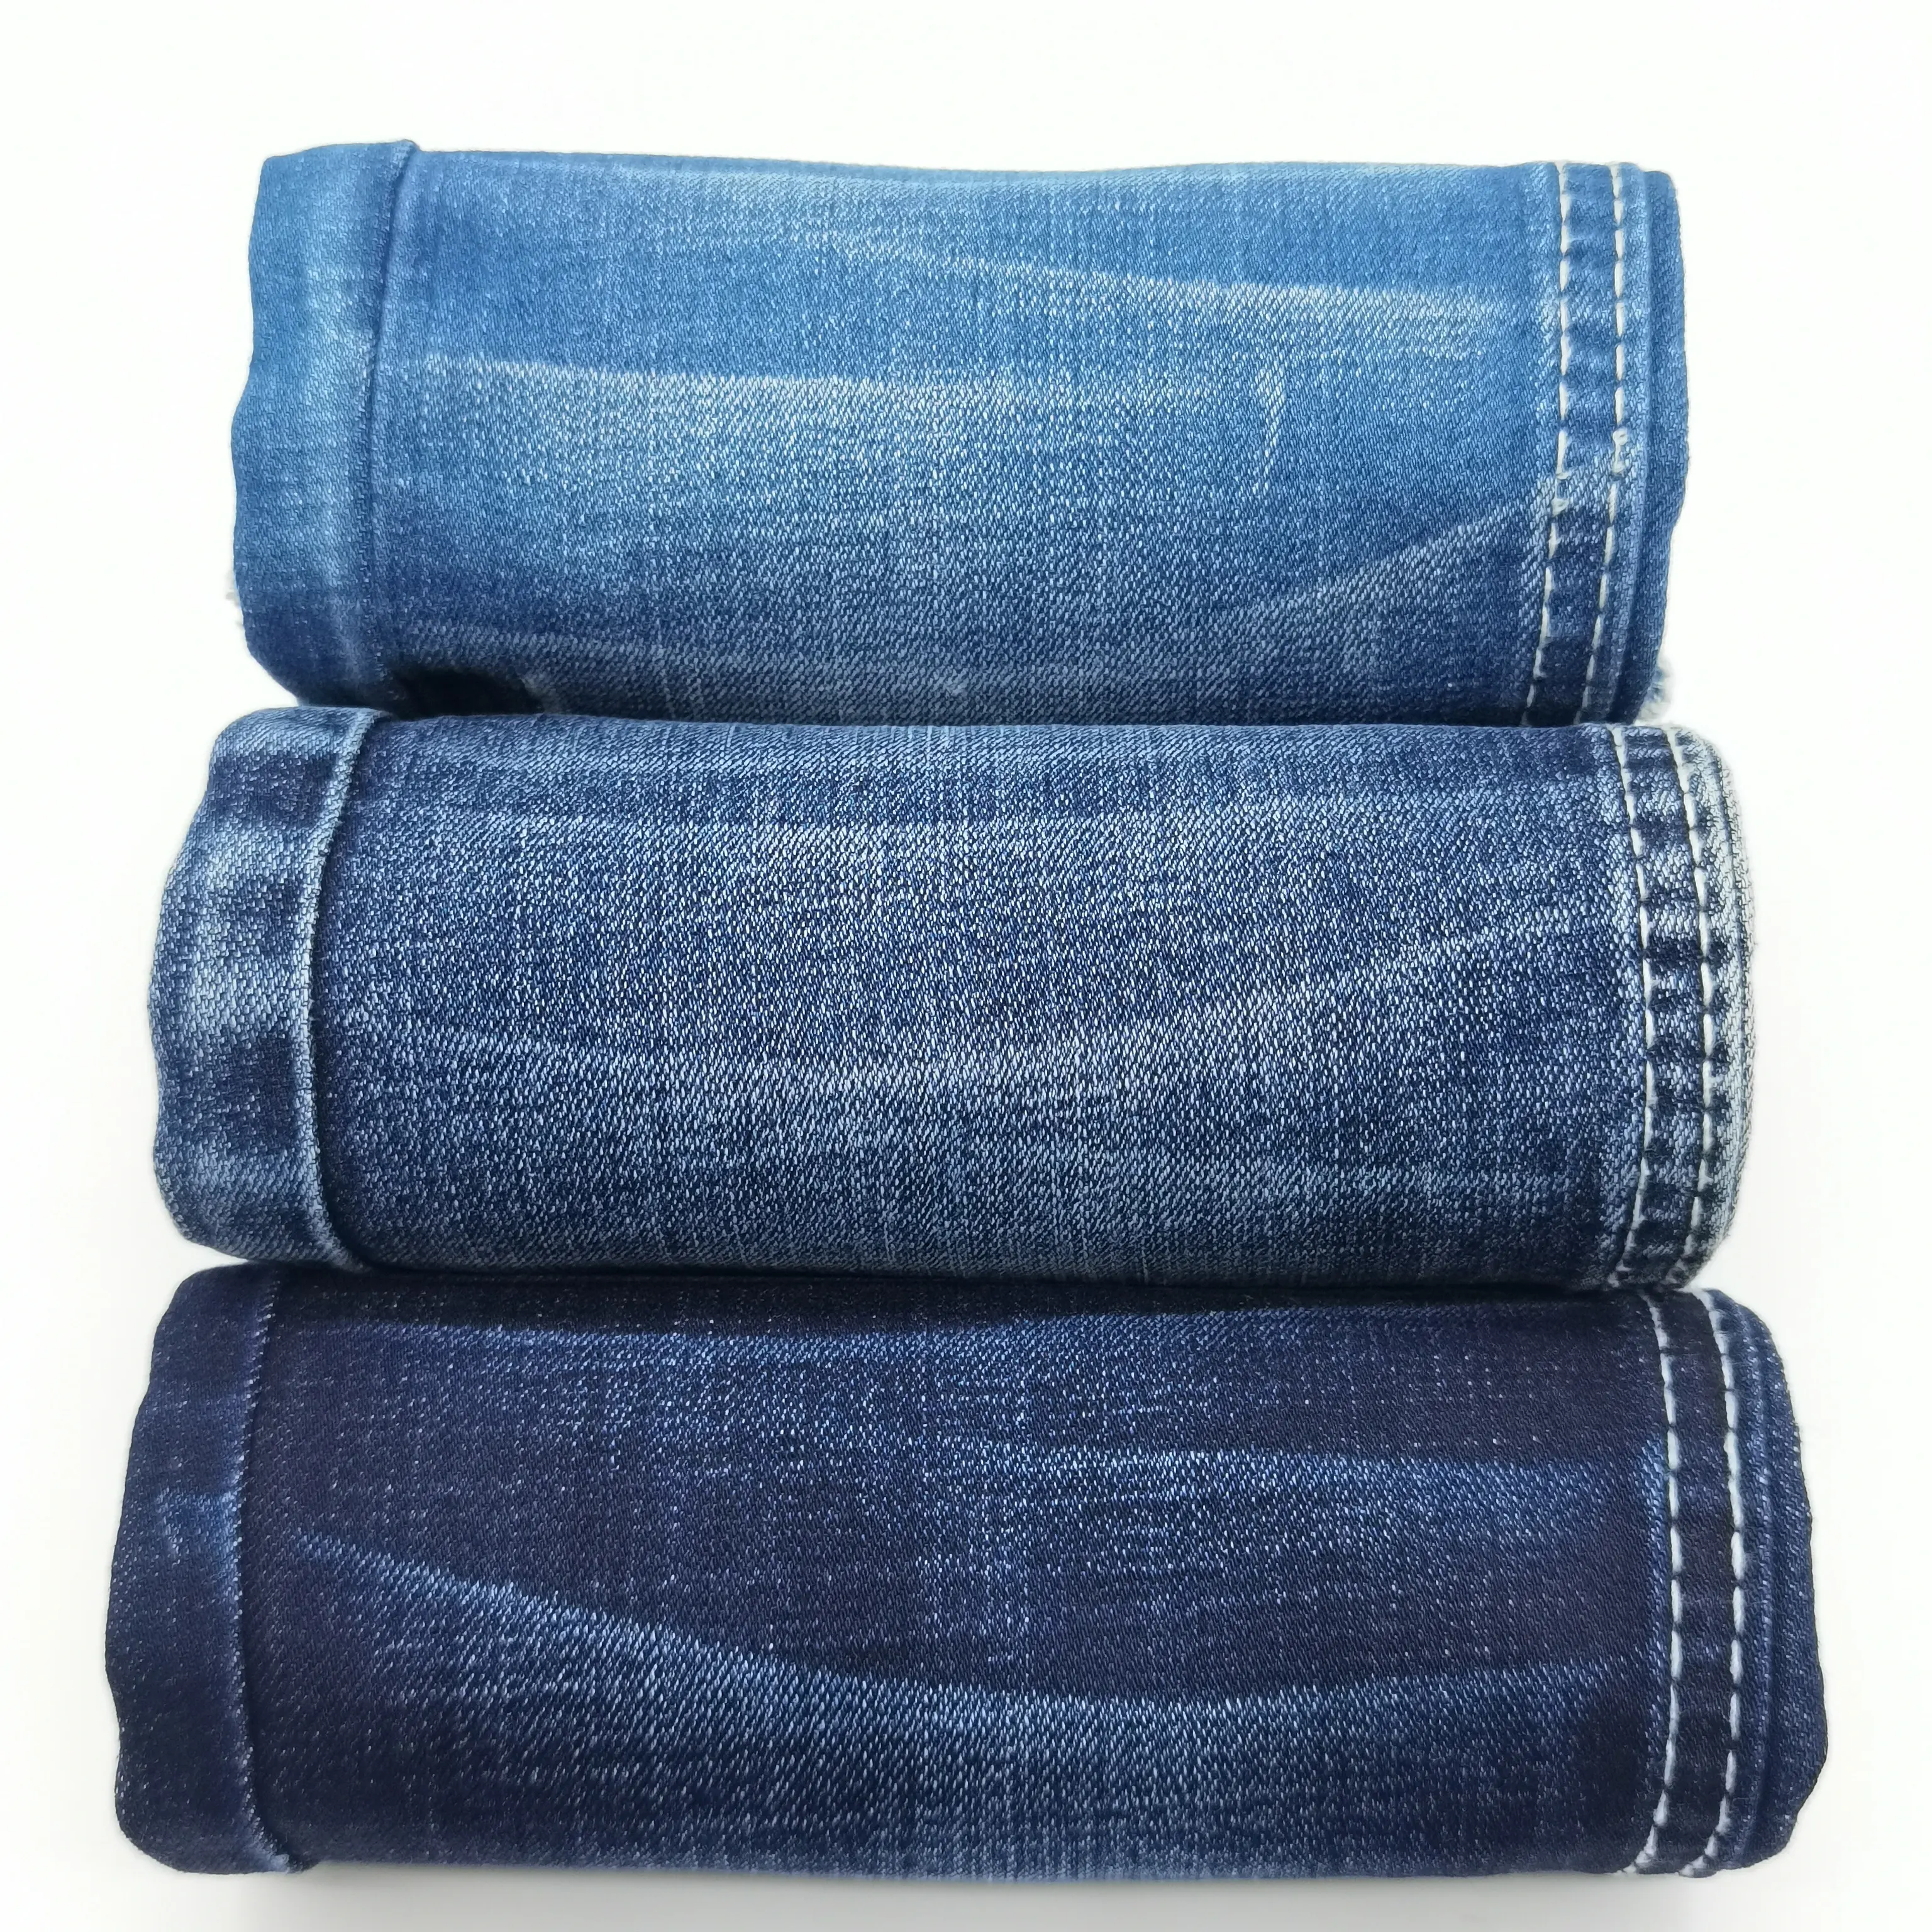 Good quality Yarn Dyed Recycled cotton yarn denim fabric high Stretch Denim Fabric